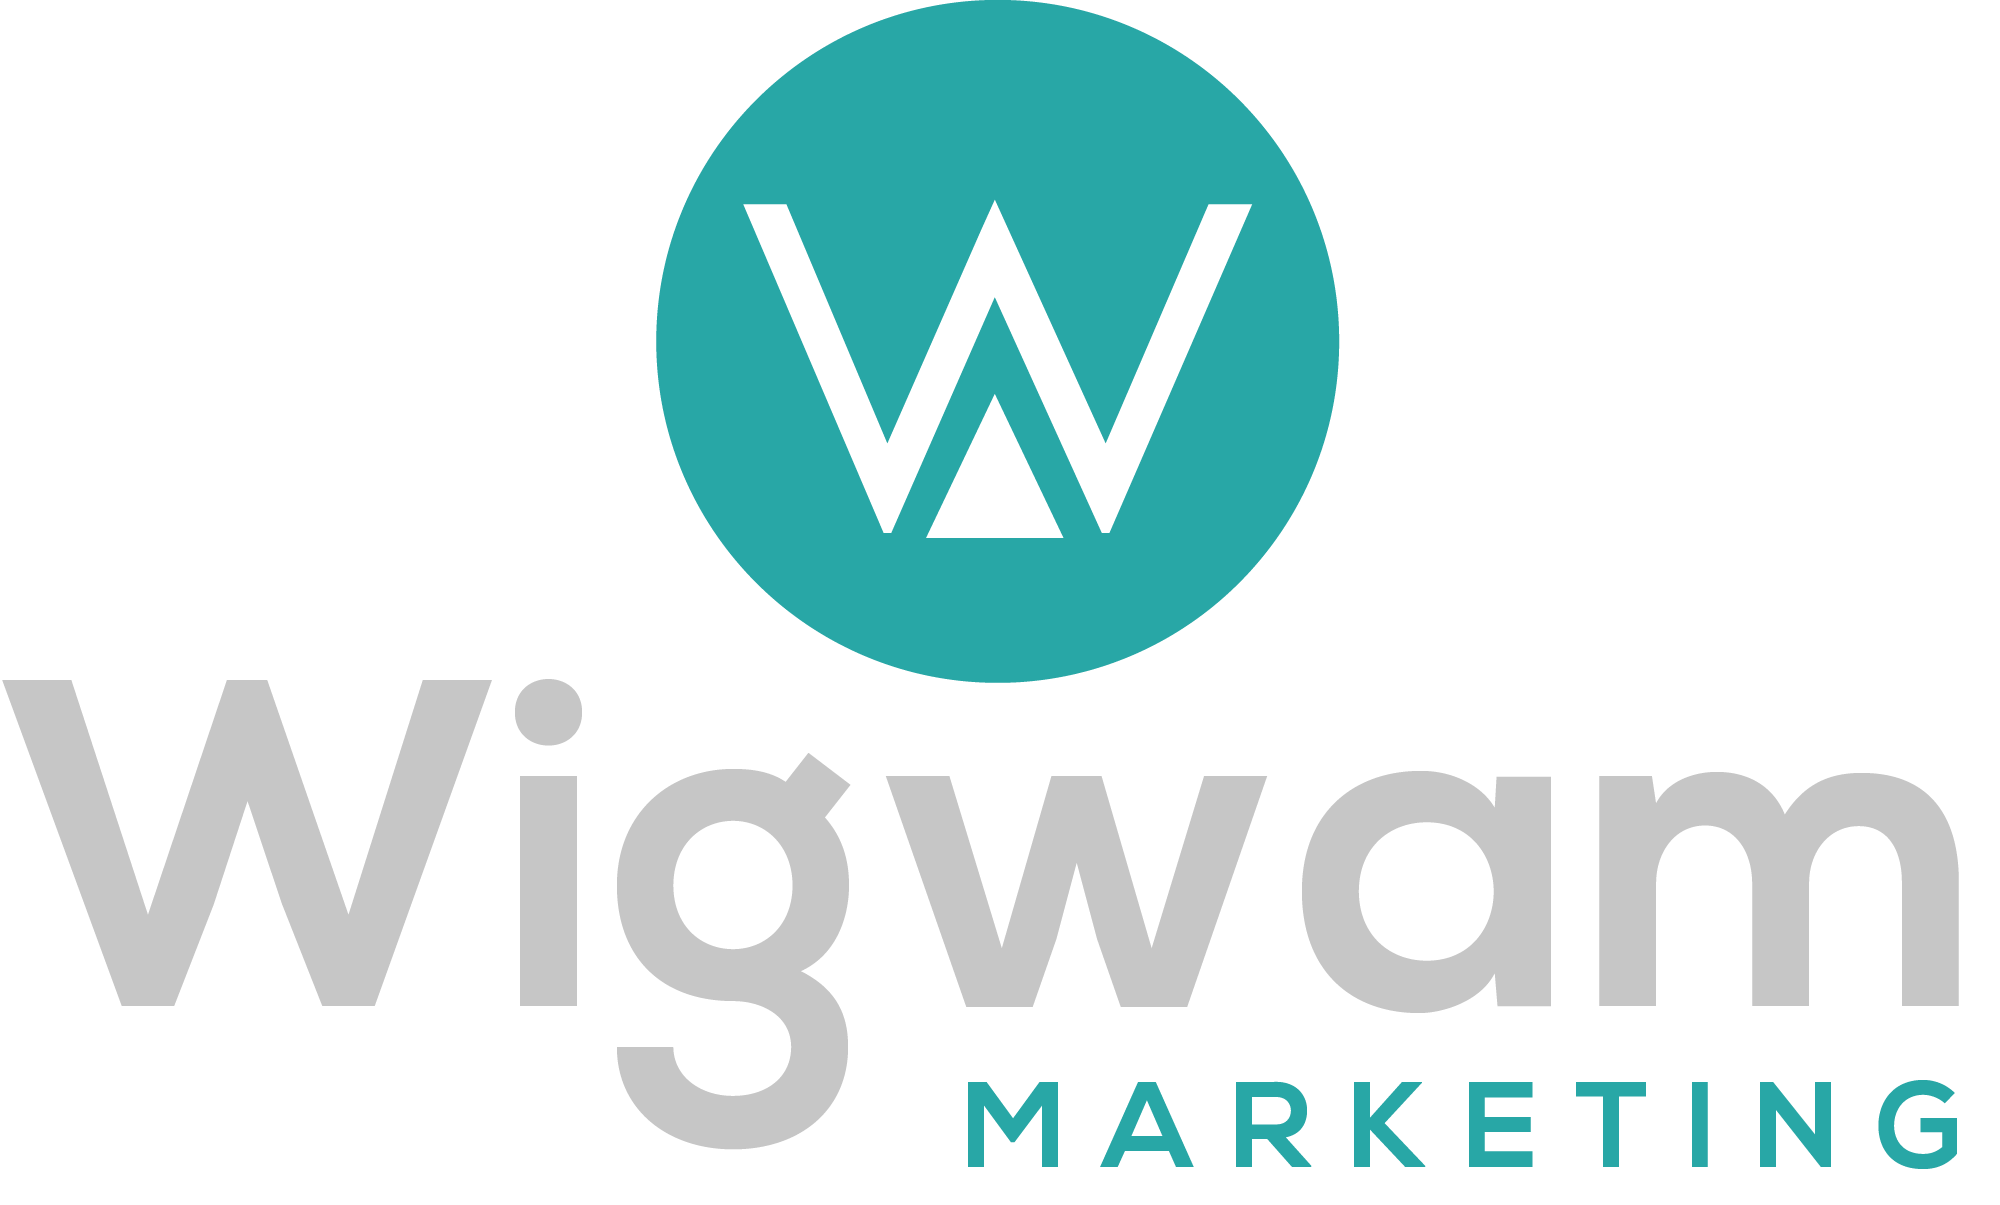 Wigwam Logo